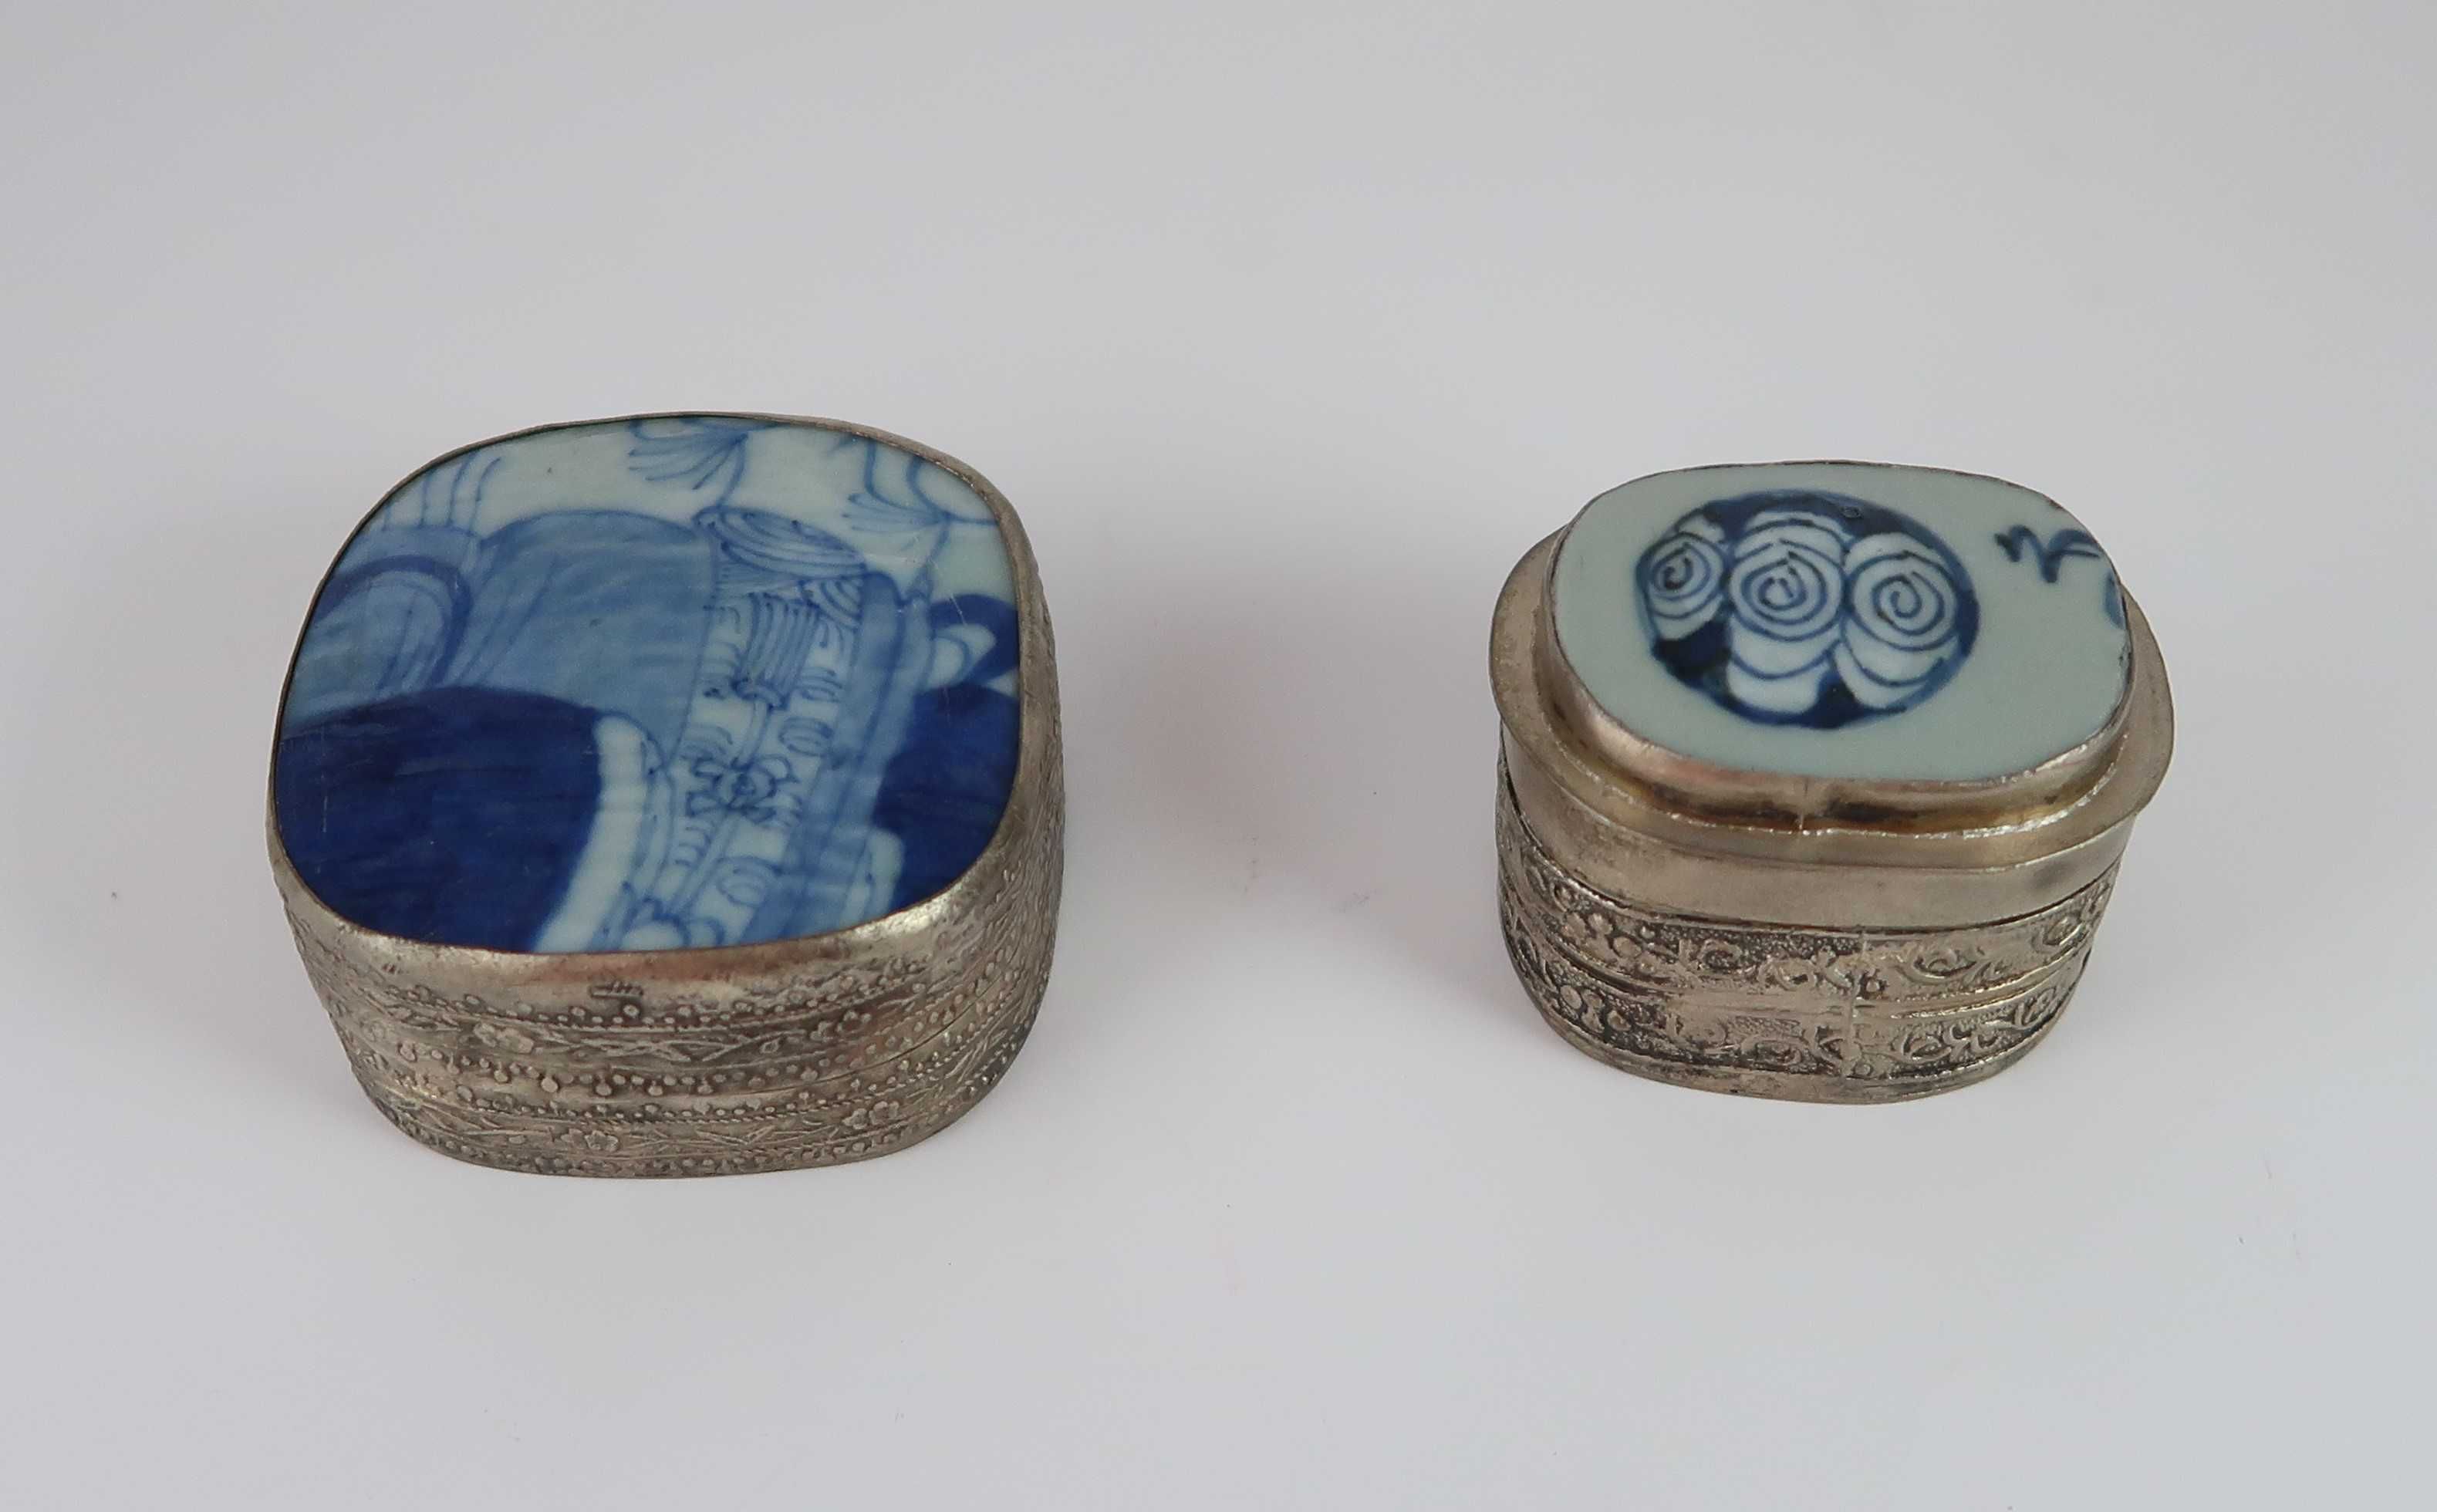 2 Caixas da china tampa porcelana azul e branca (antigas)